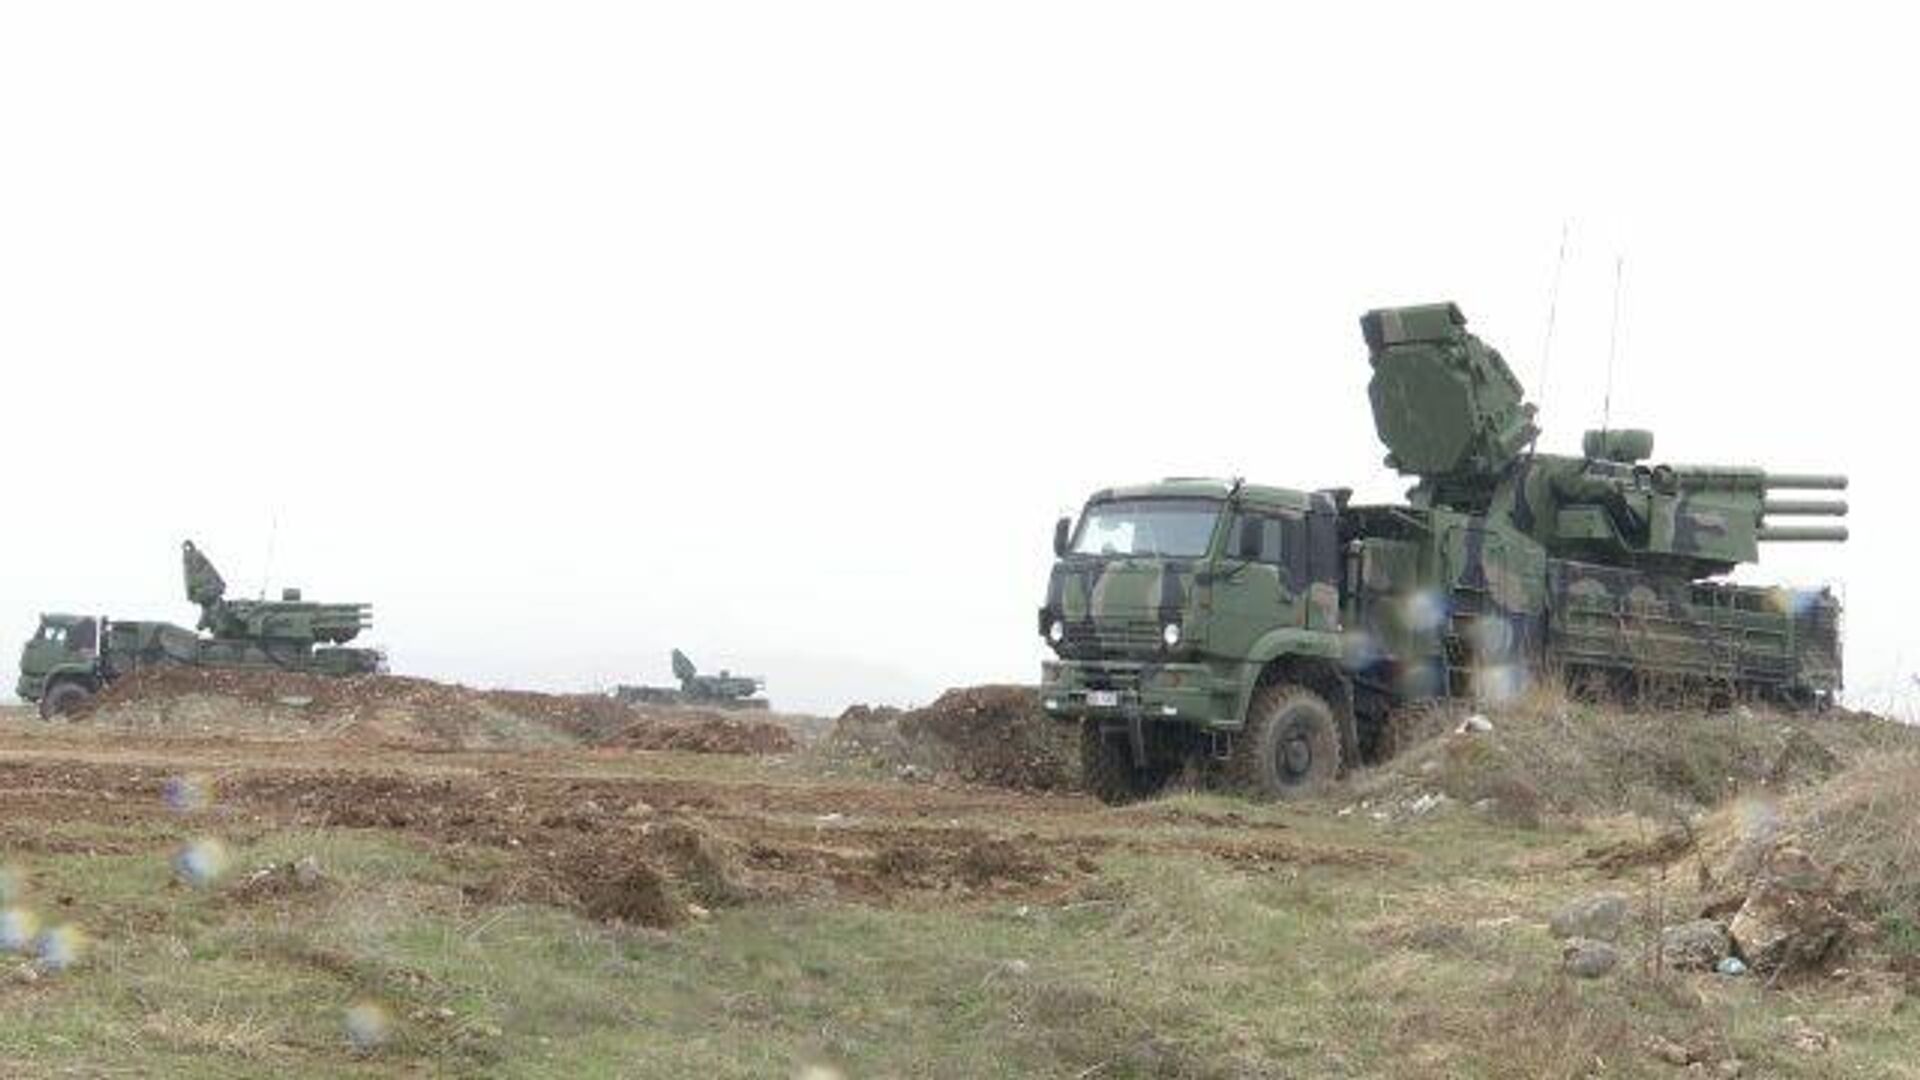 Россия передала Сербии танки и БТР по соглашению о военном сотрудничестве